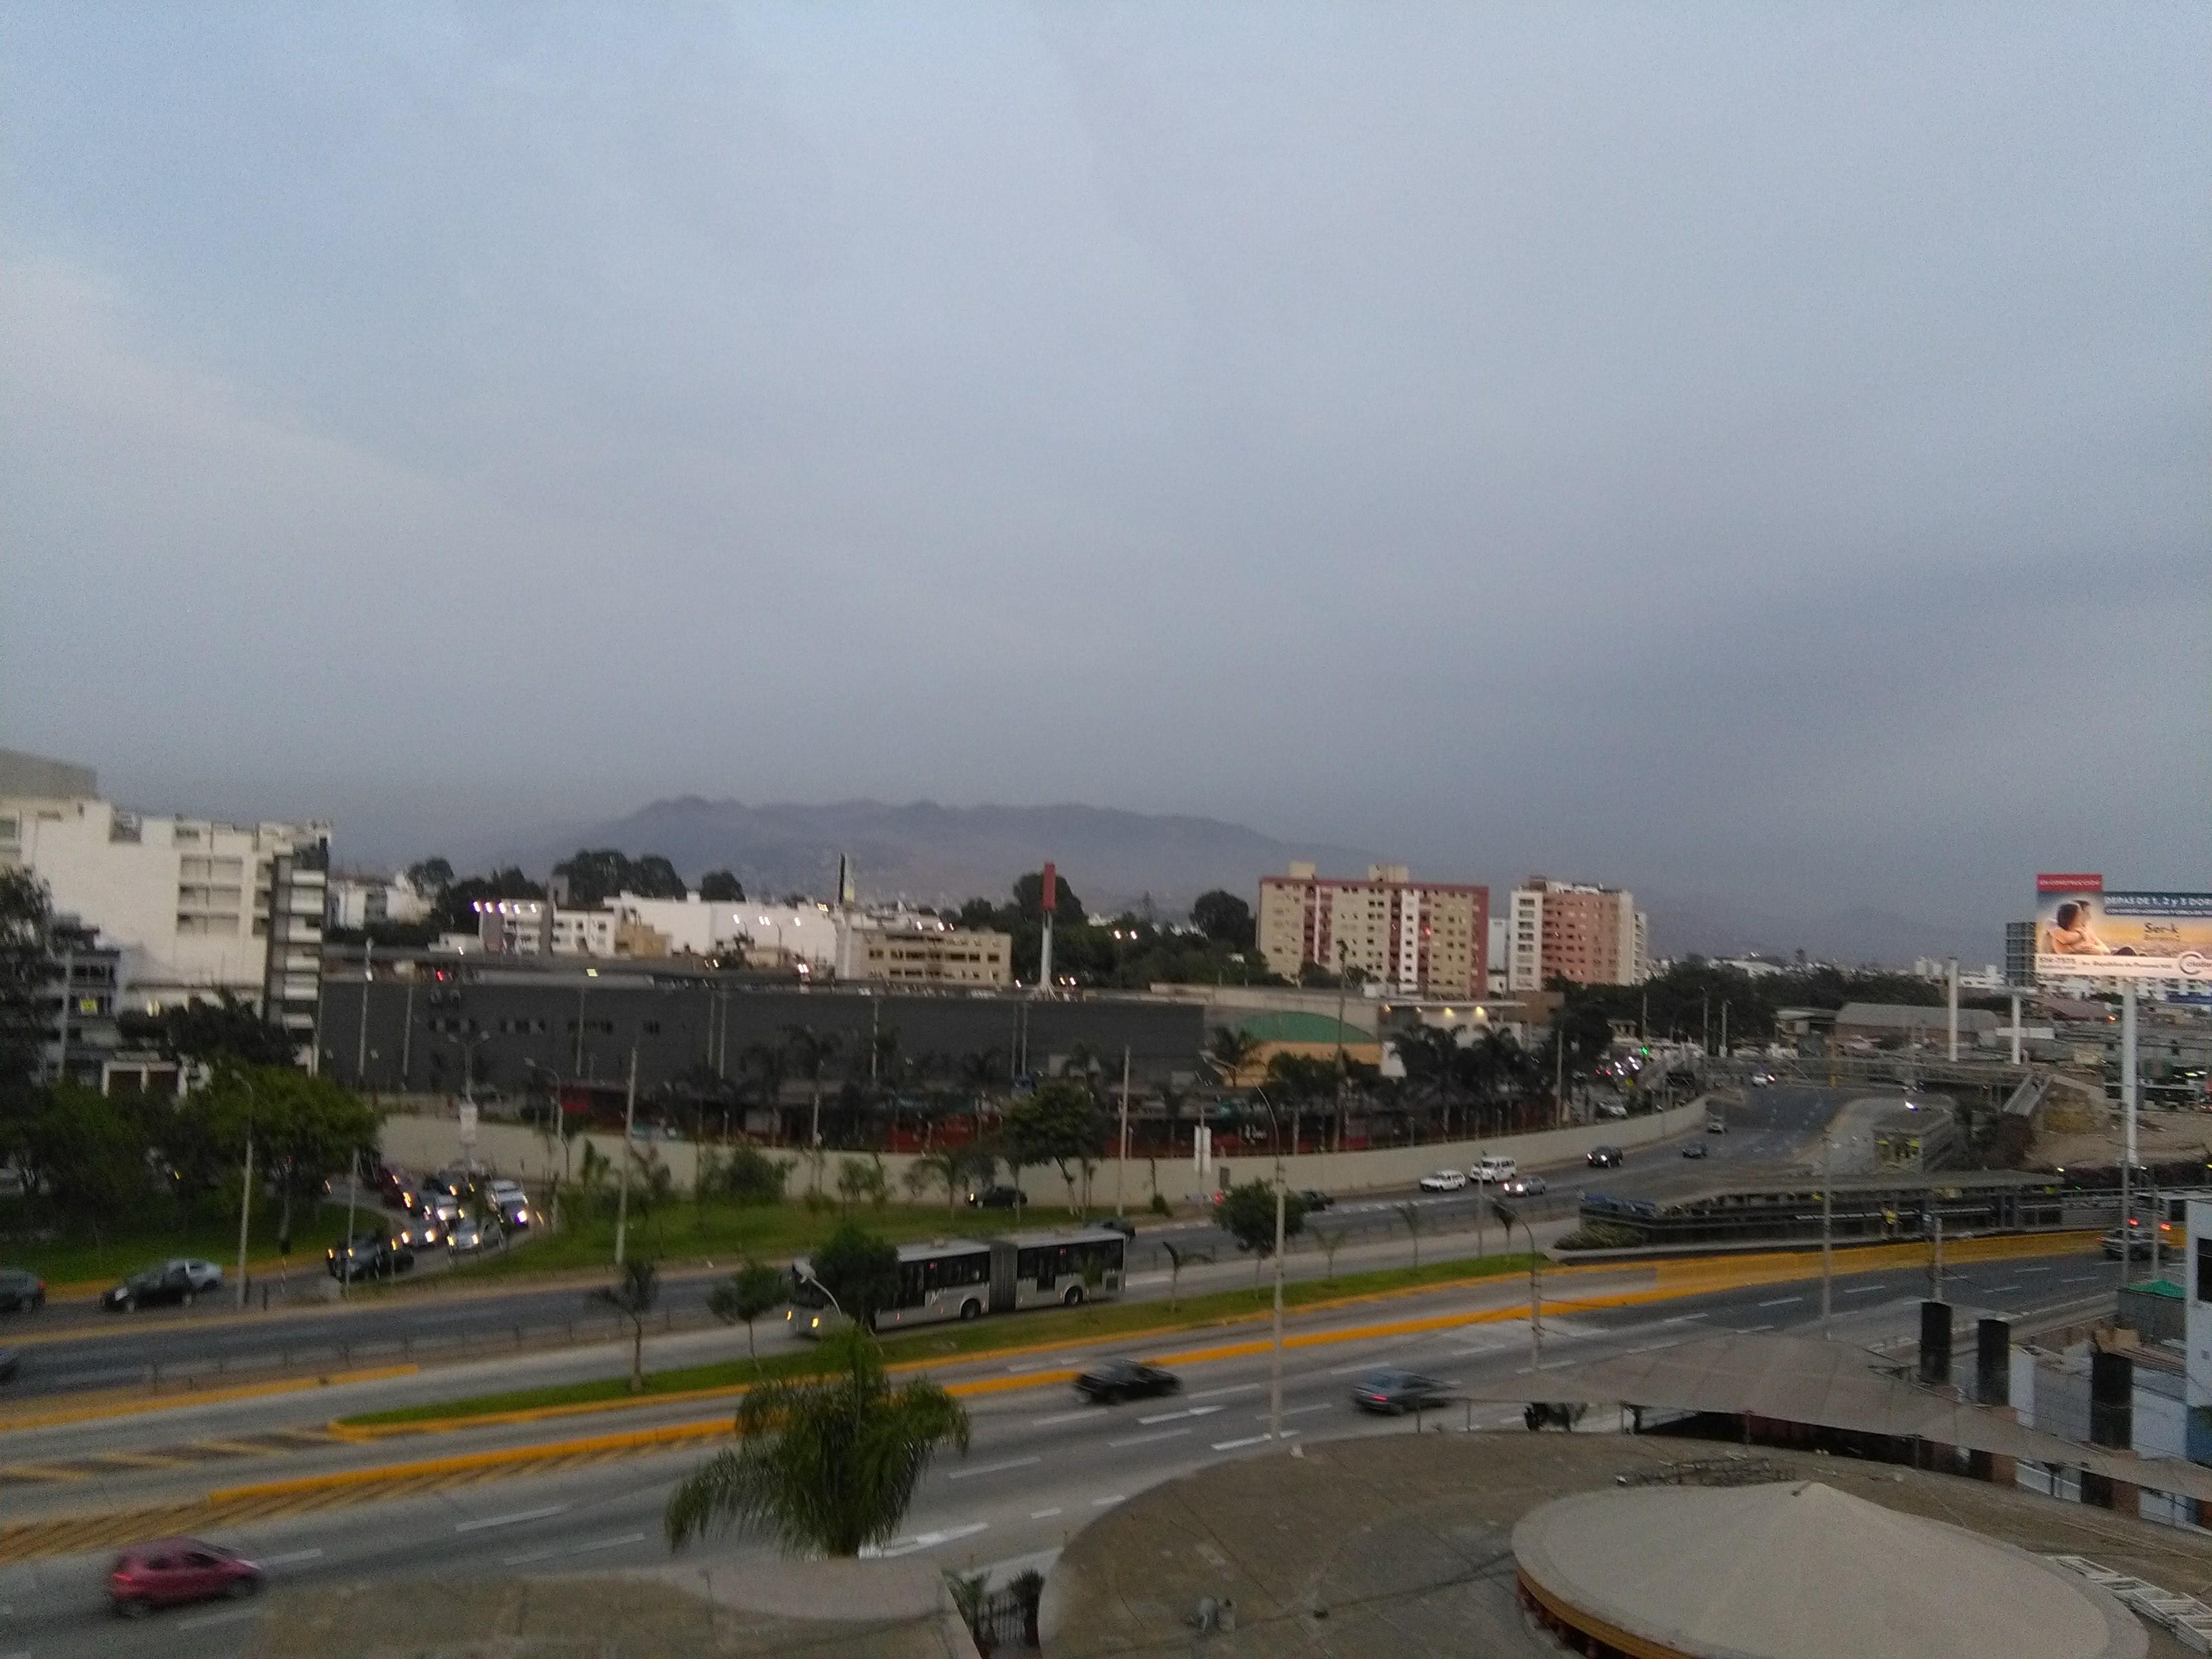 Hotel Park Suites Lima Exterior photo